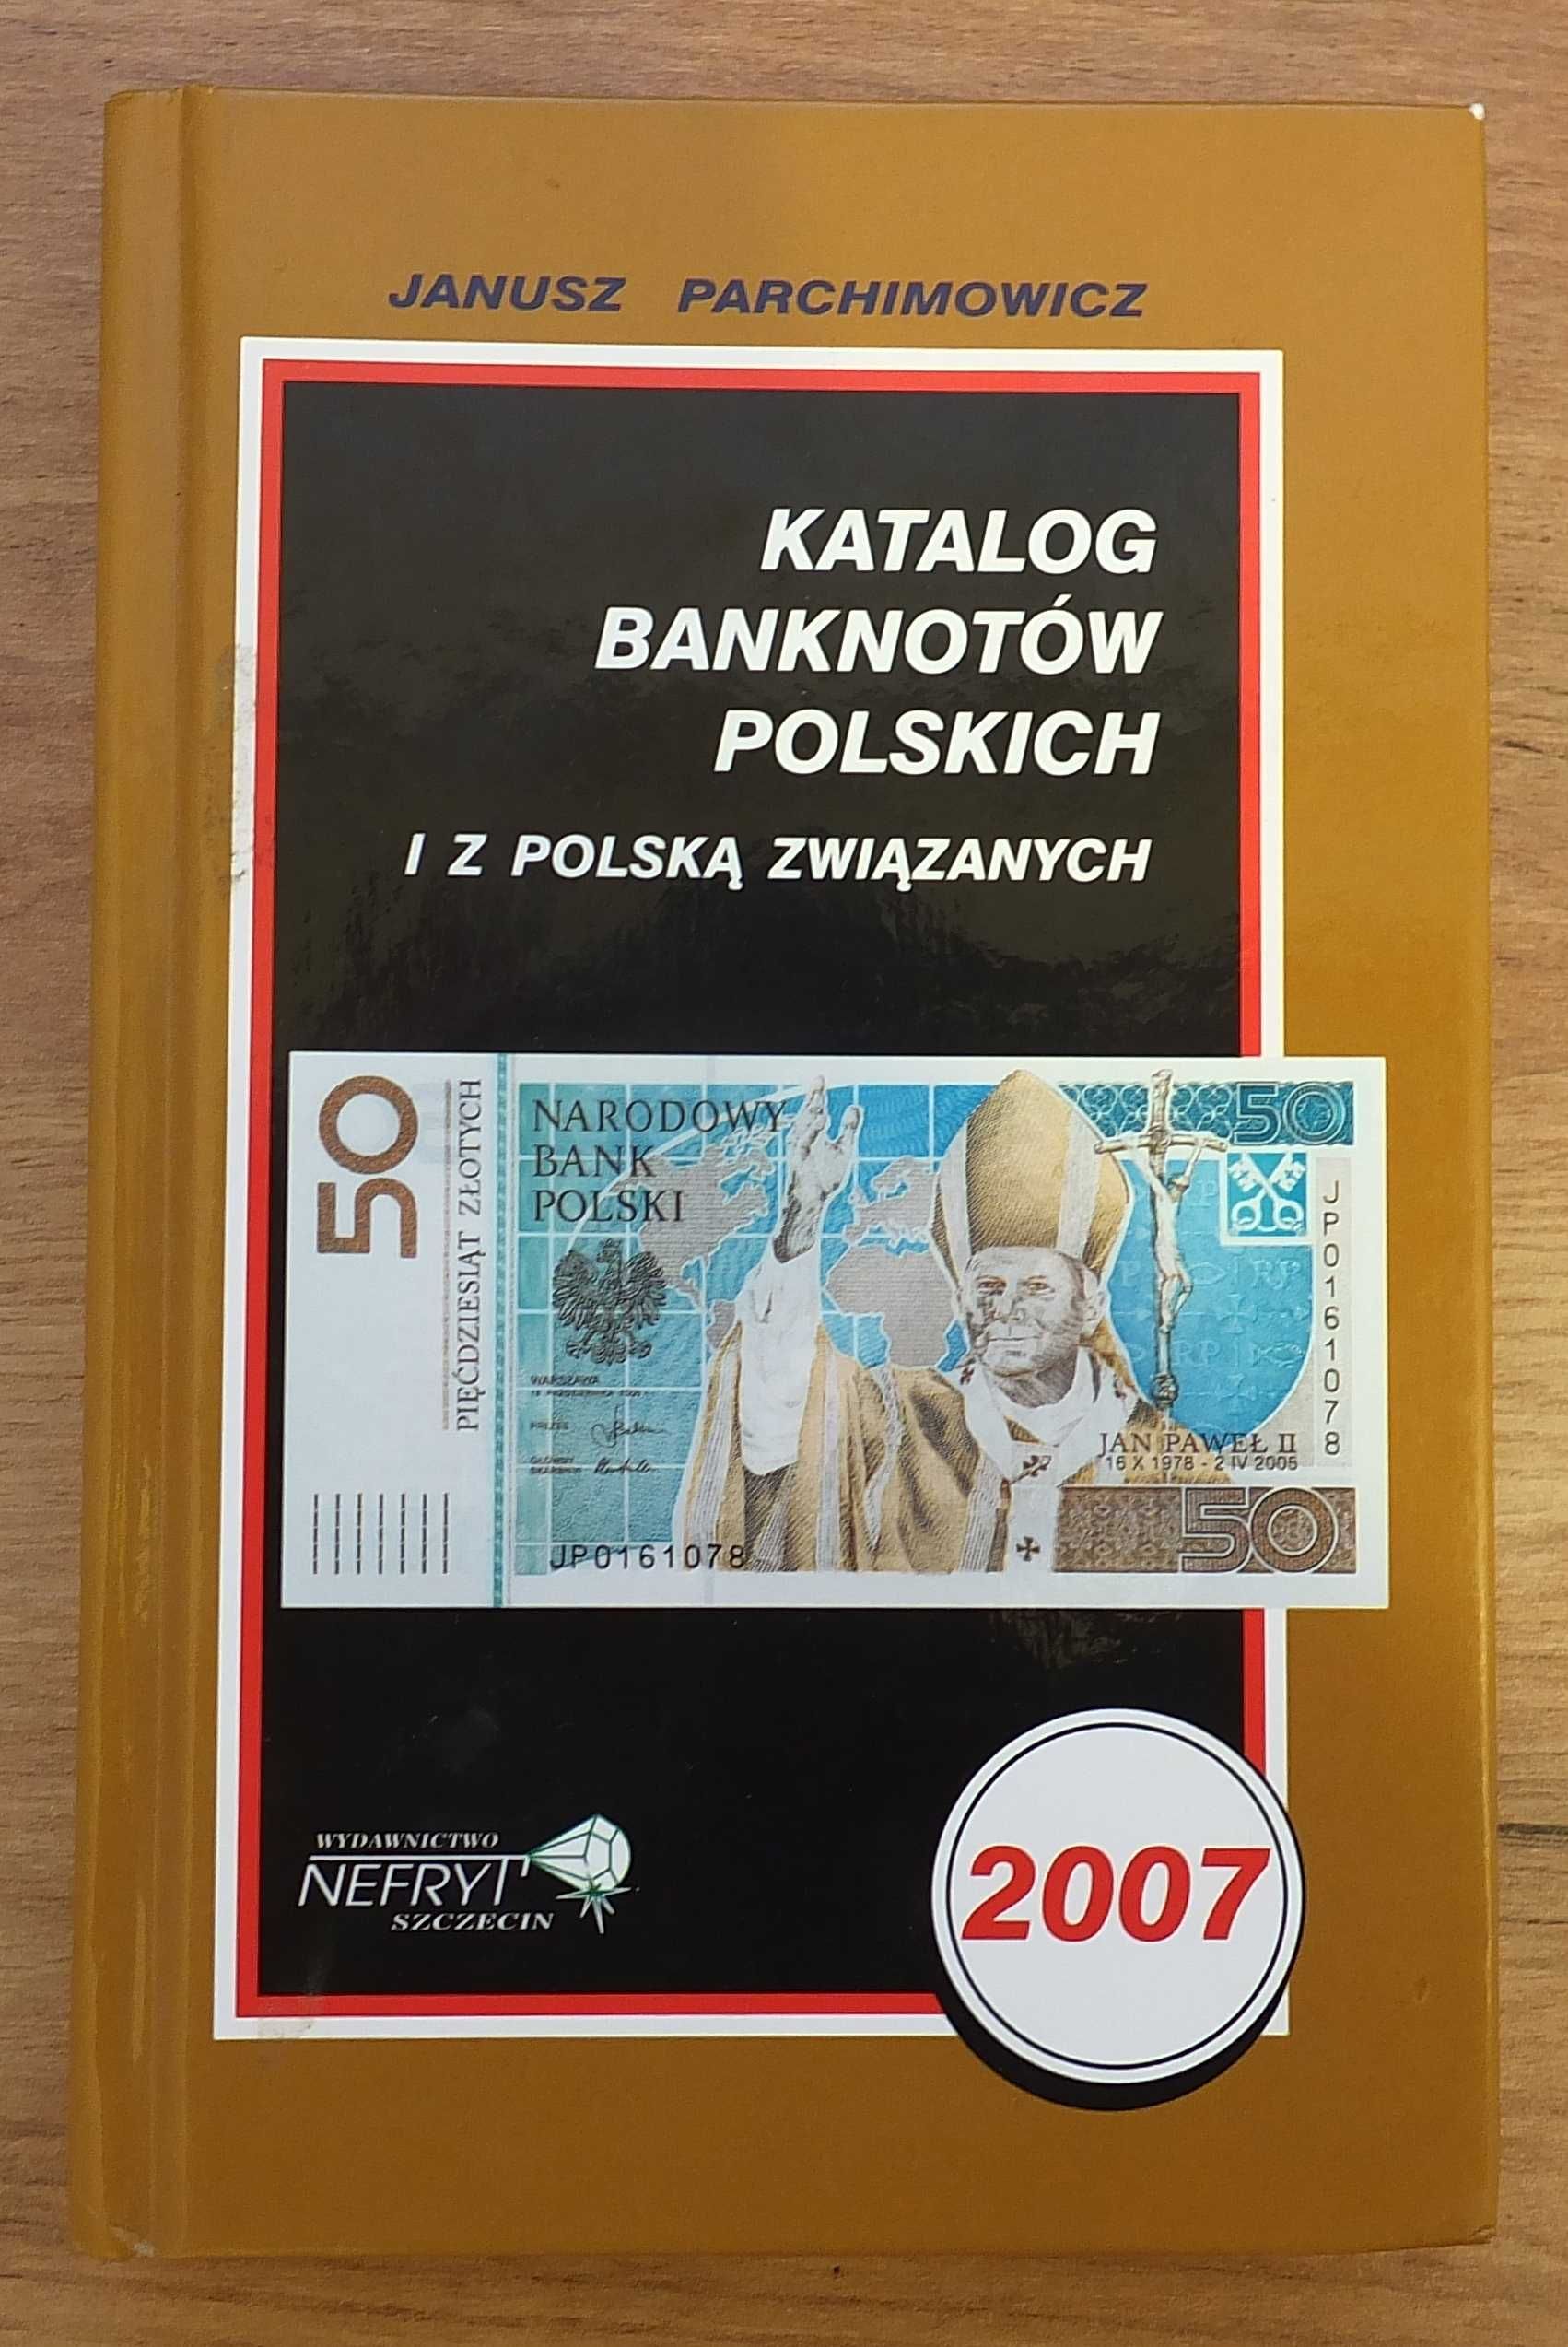 Katalog banknotów polskich 2007 - Parchimowicz